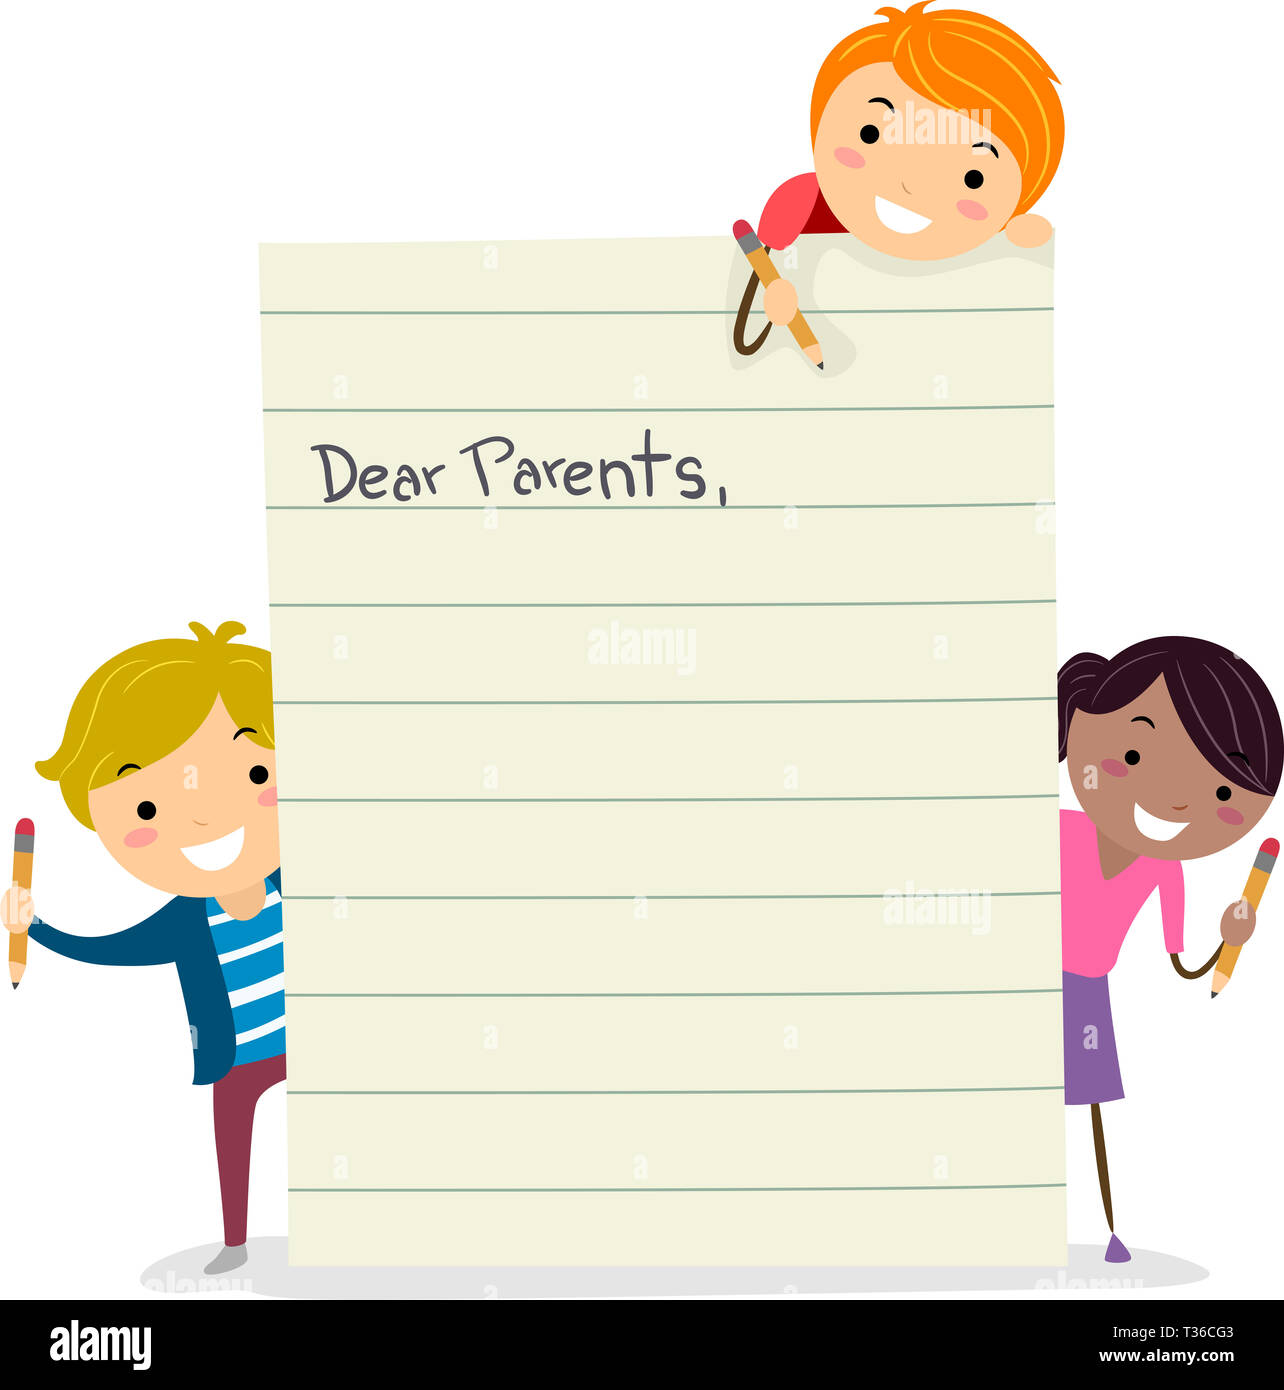 Dearest parents